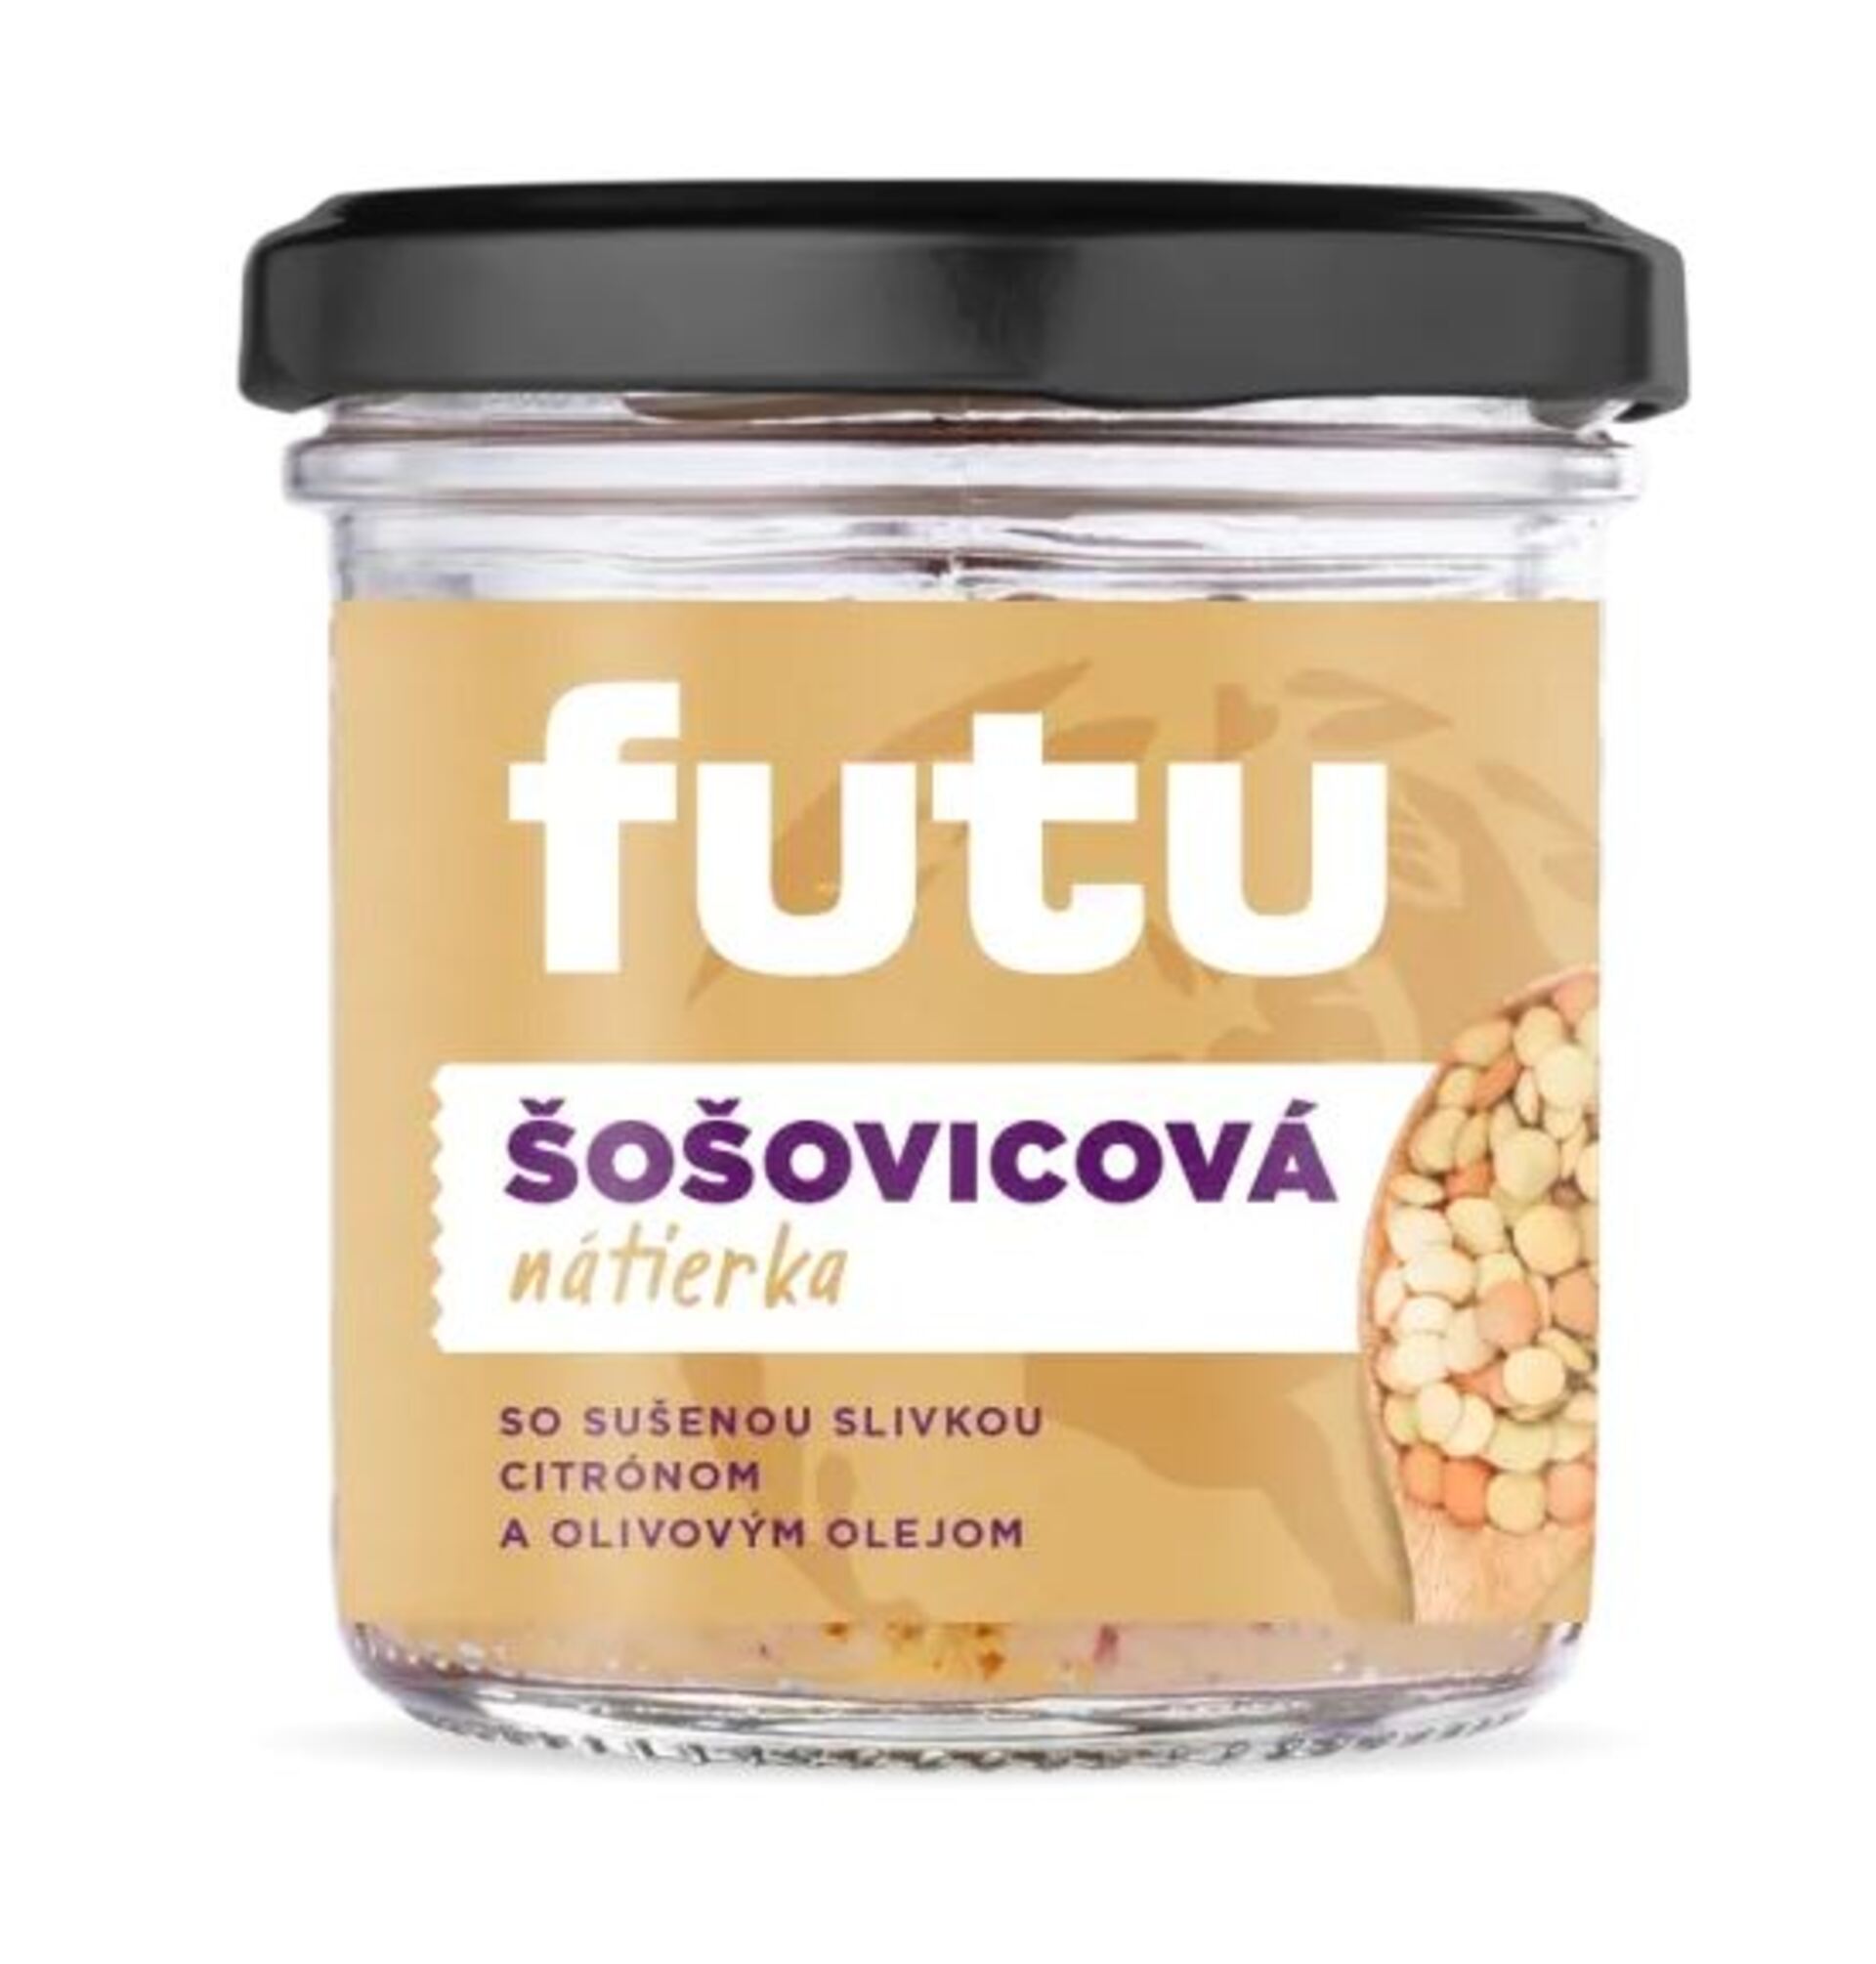 E-shop Futu Pomazánka šošovková so sušenými slivkami 140 g